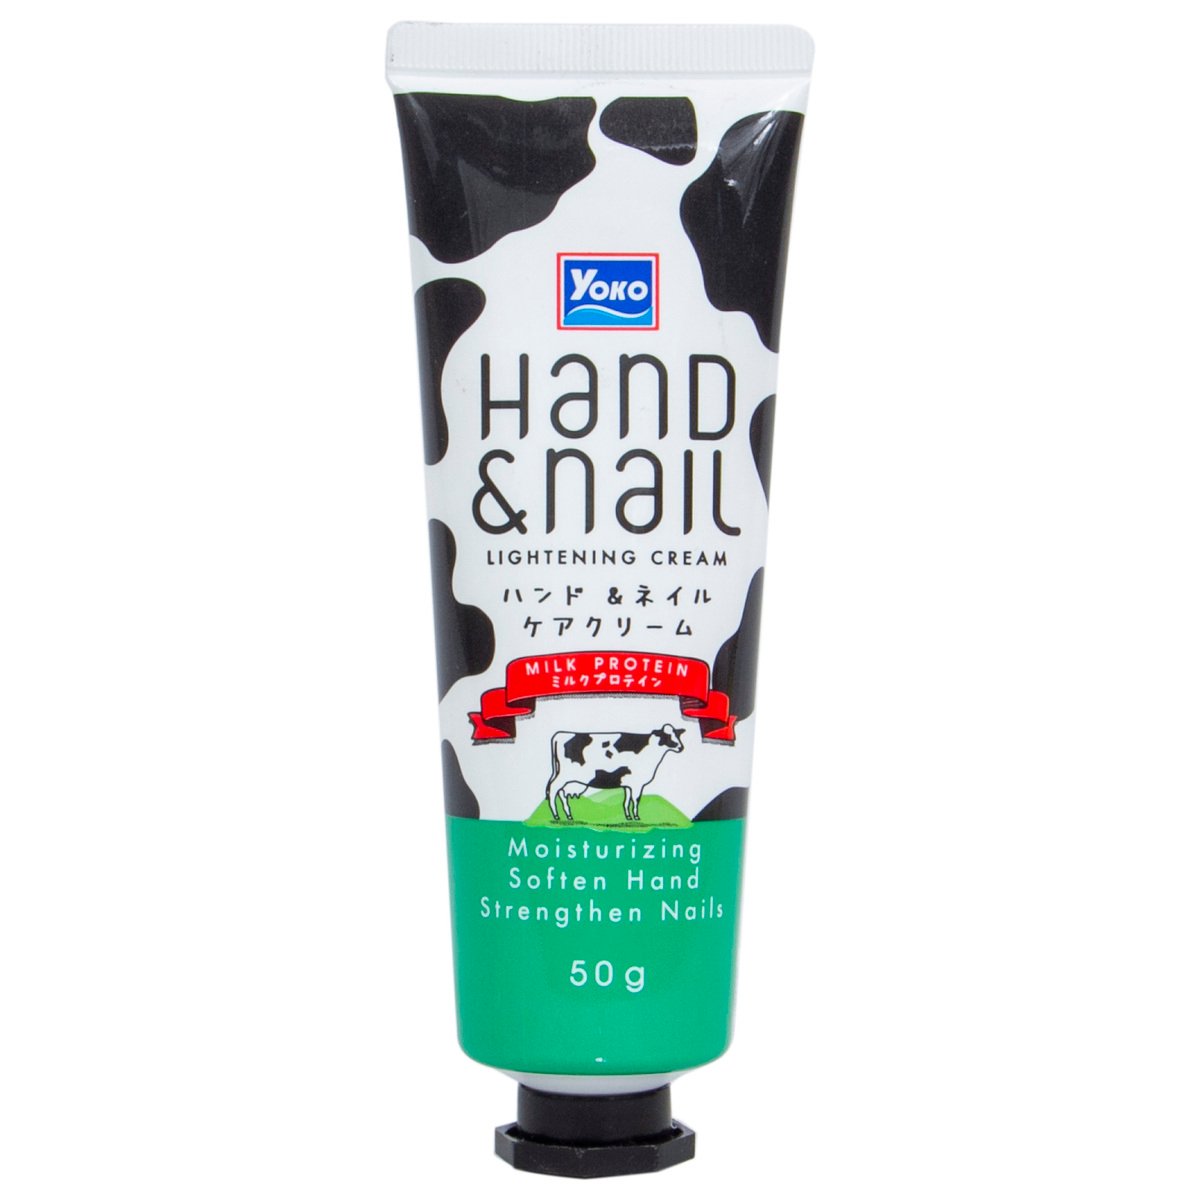 Yoko Hand & Nail Lightening Cream 50 g